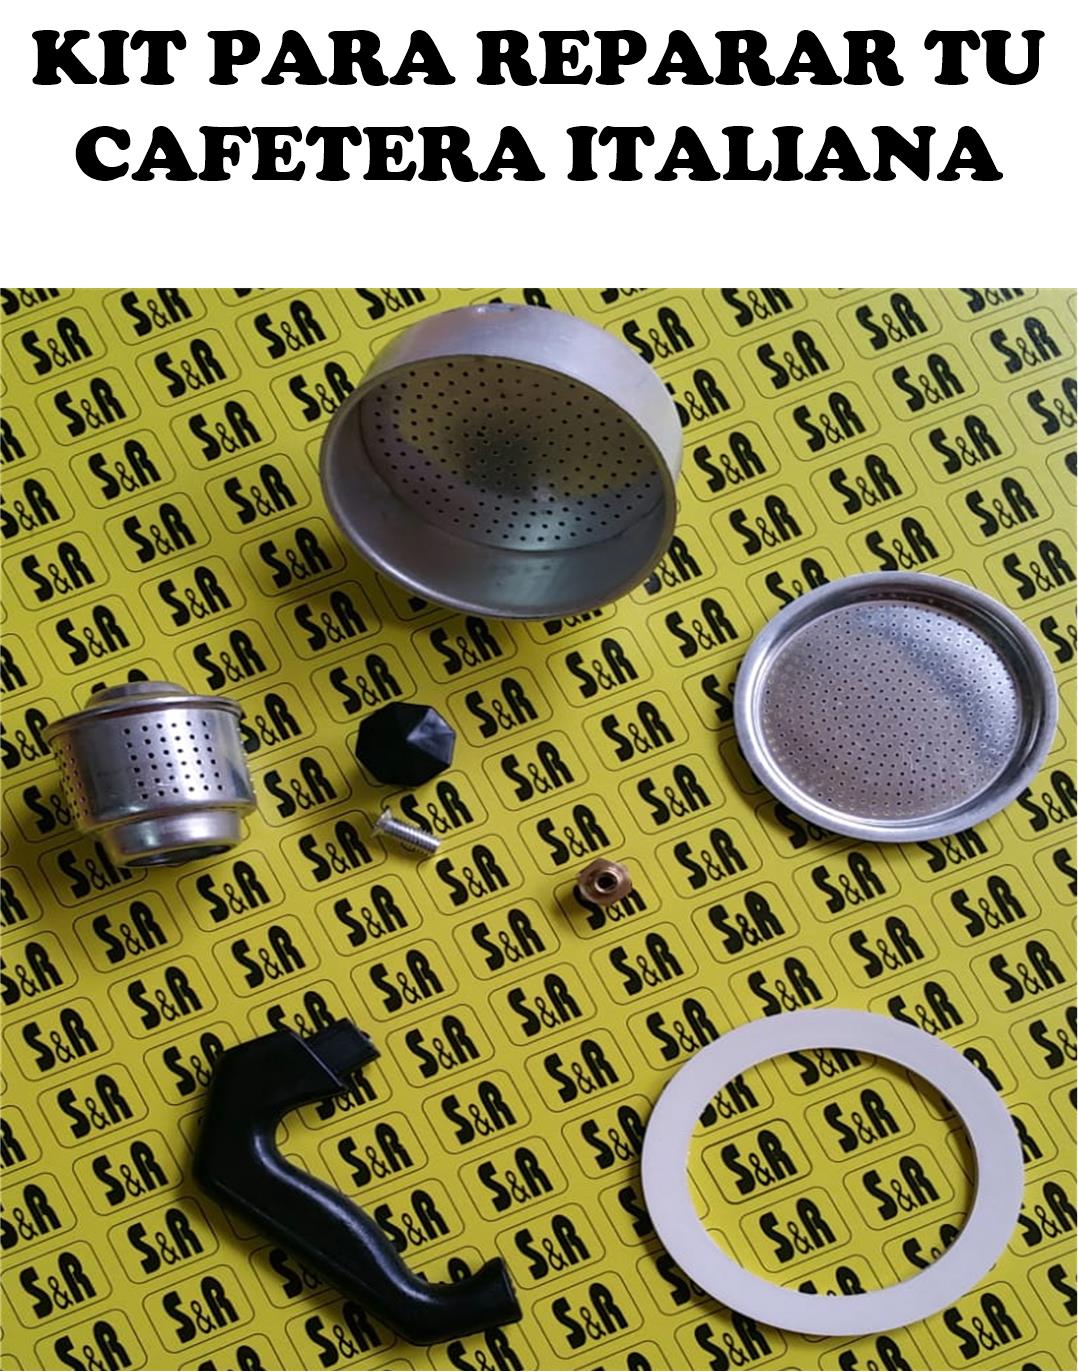 KIT REPARACION CAFETERAS ITALIANAS